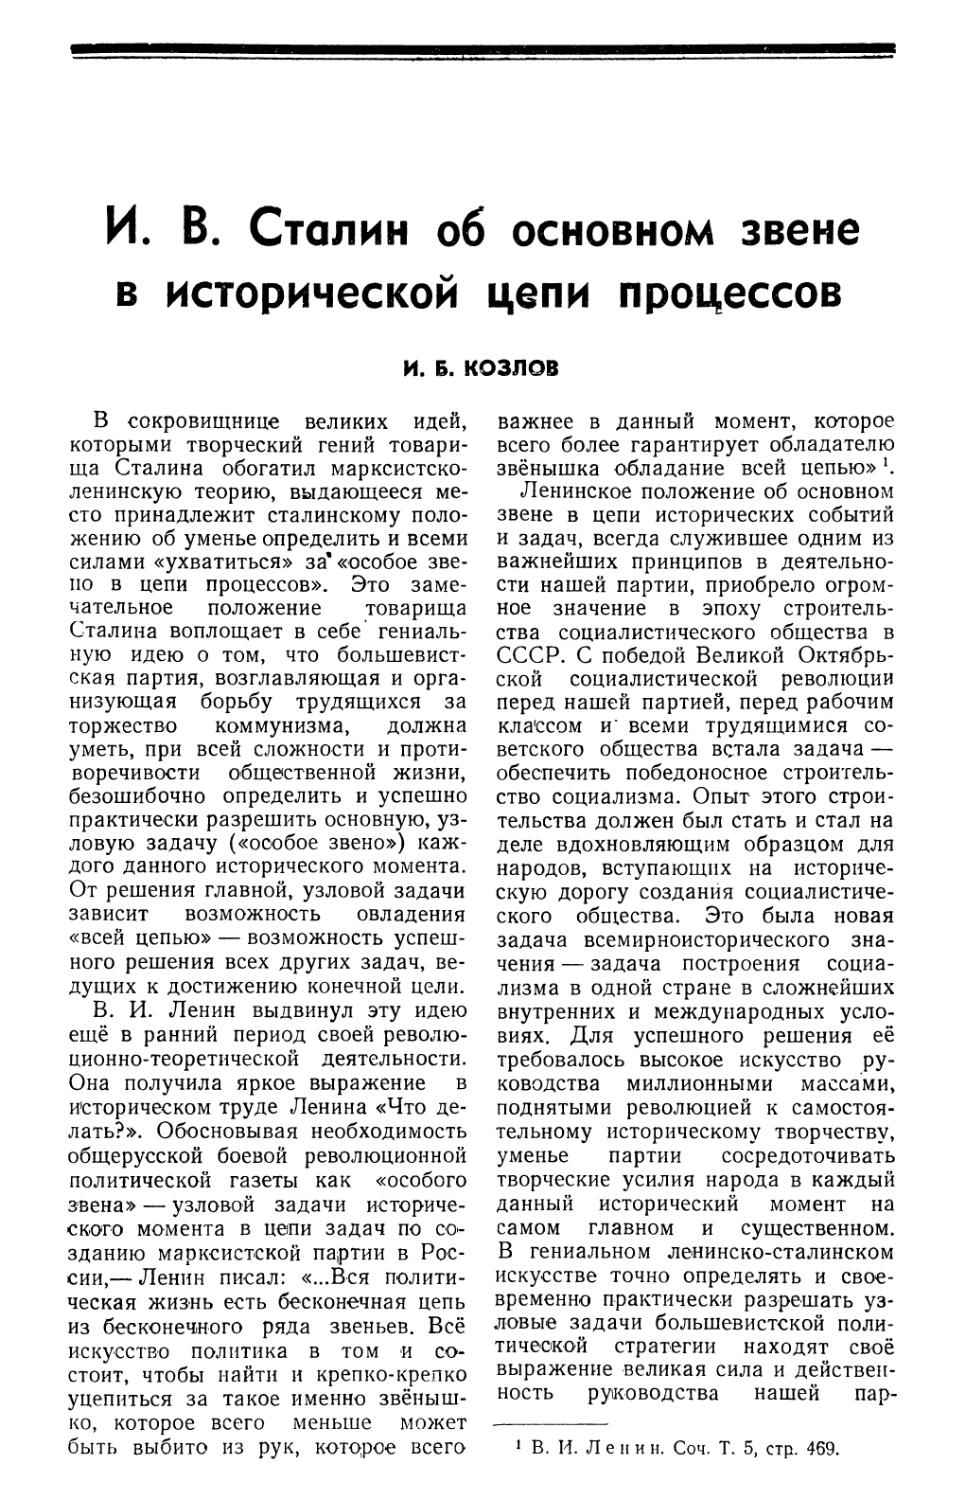 И. Б. Козлов — И. В. Сталин об основном звене в исторической цепи процессов